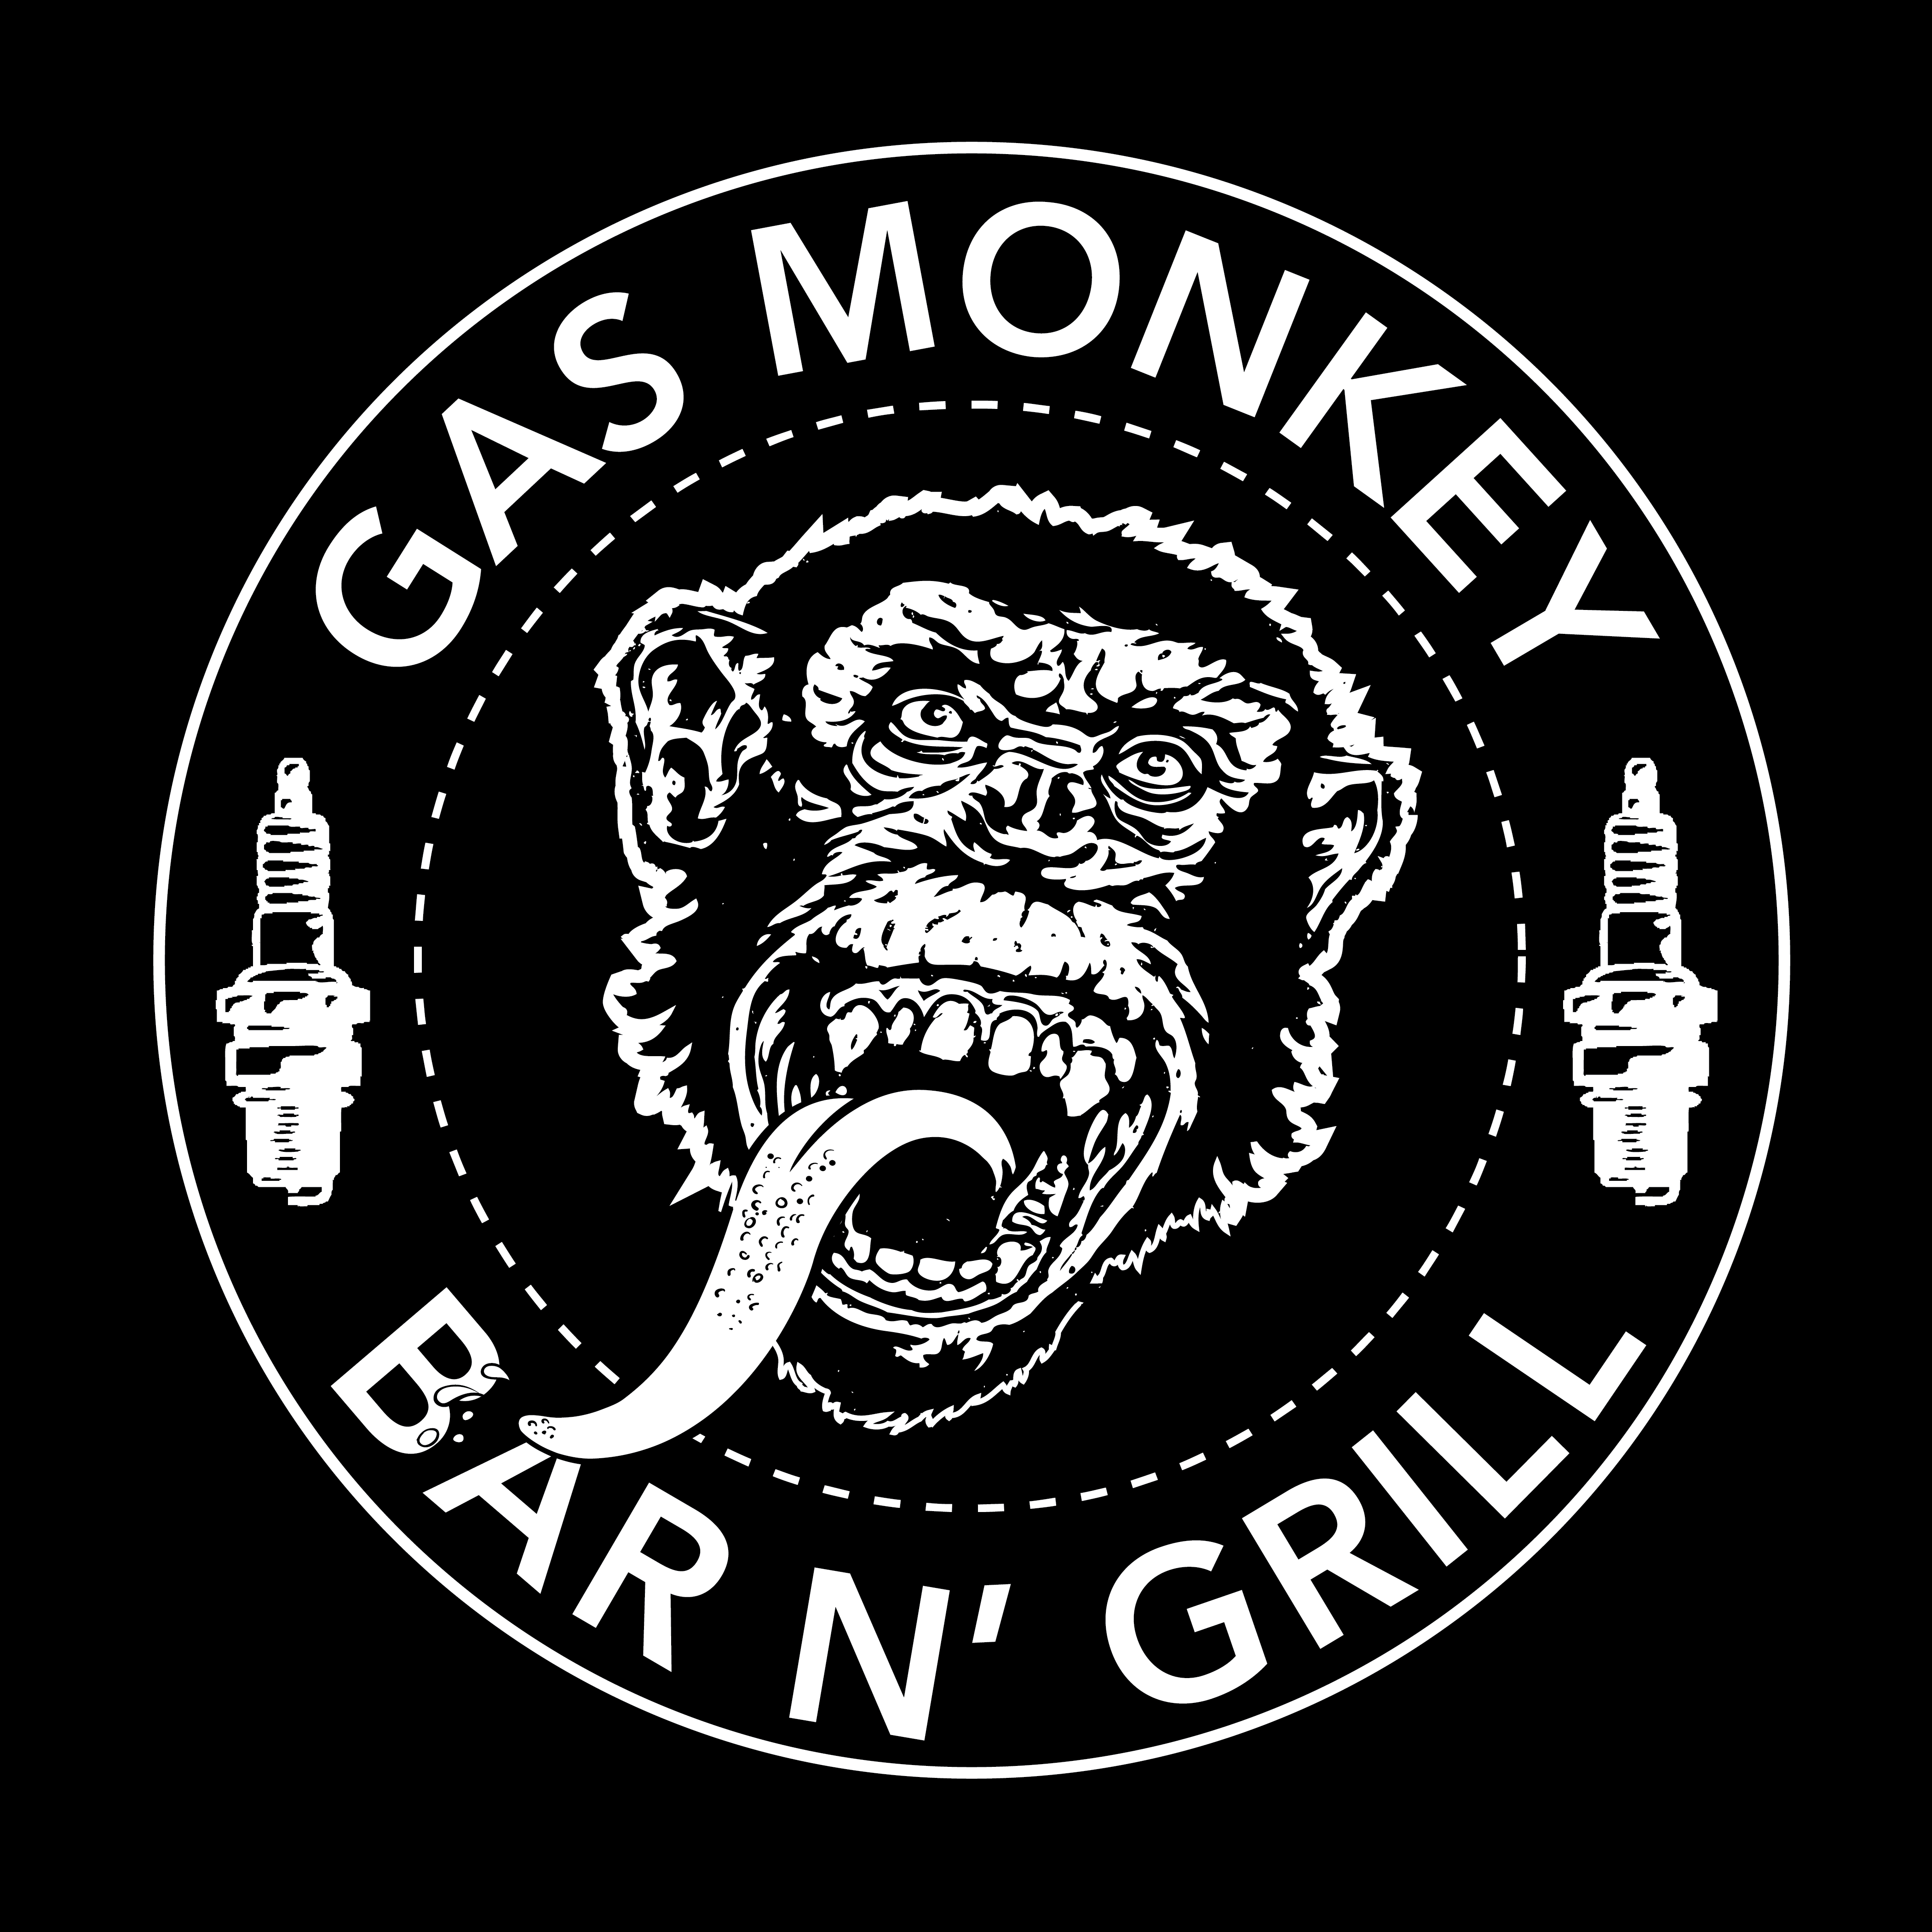 Gas Monkey Garage Logo Wallpaper - WallpaperSafari